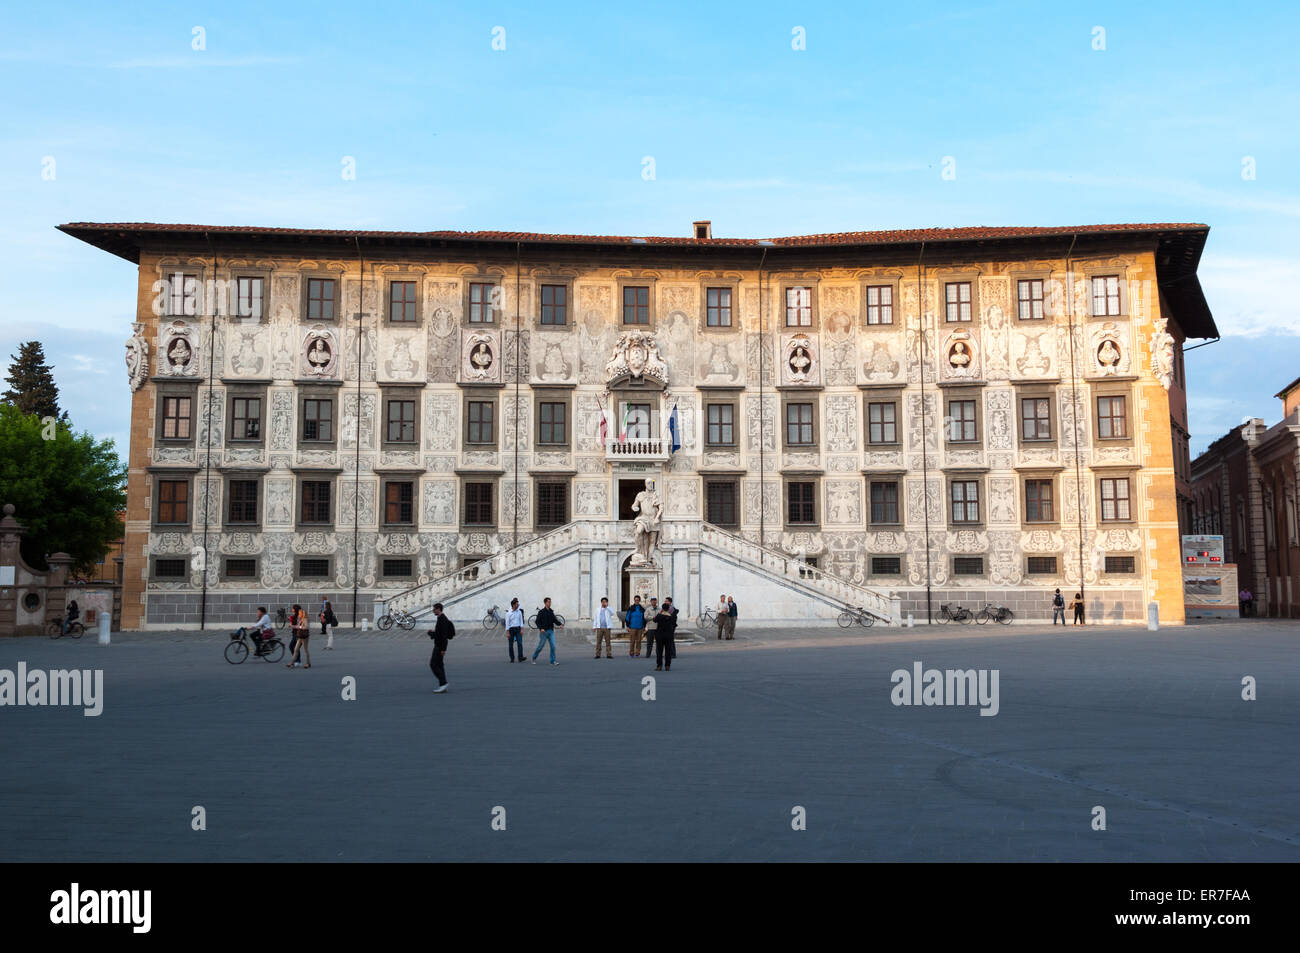 Palazzo della Carovana, Pisa, Italy Stock Photo